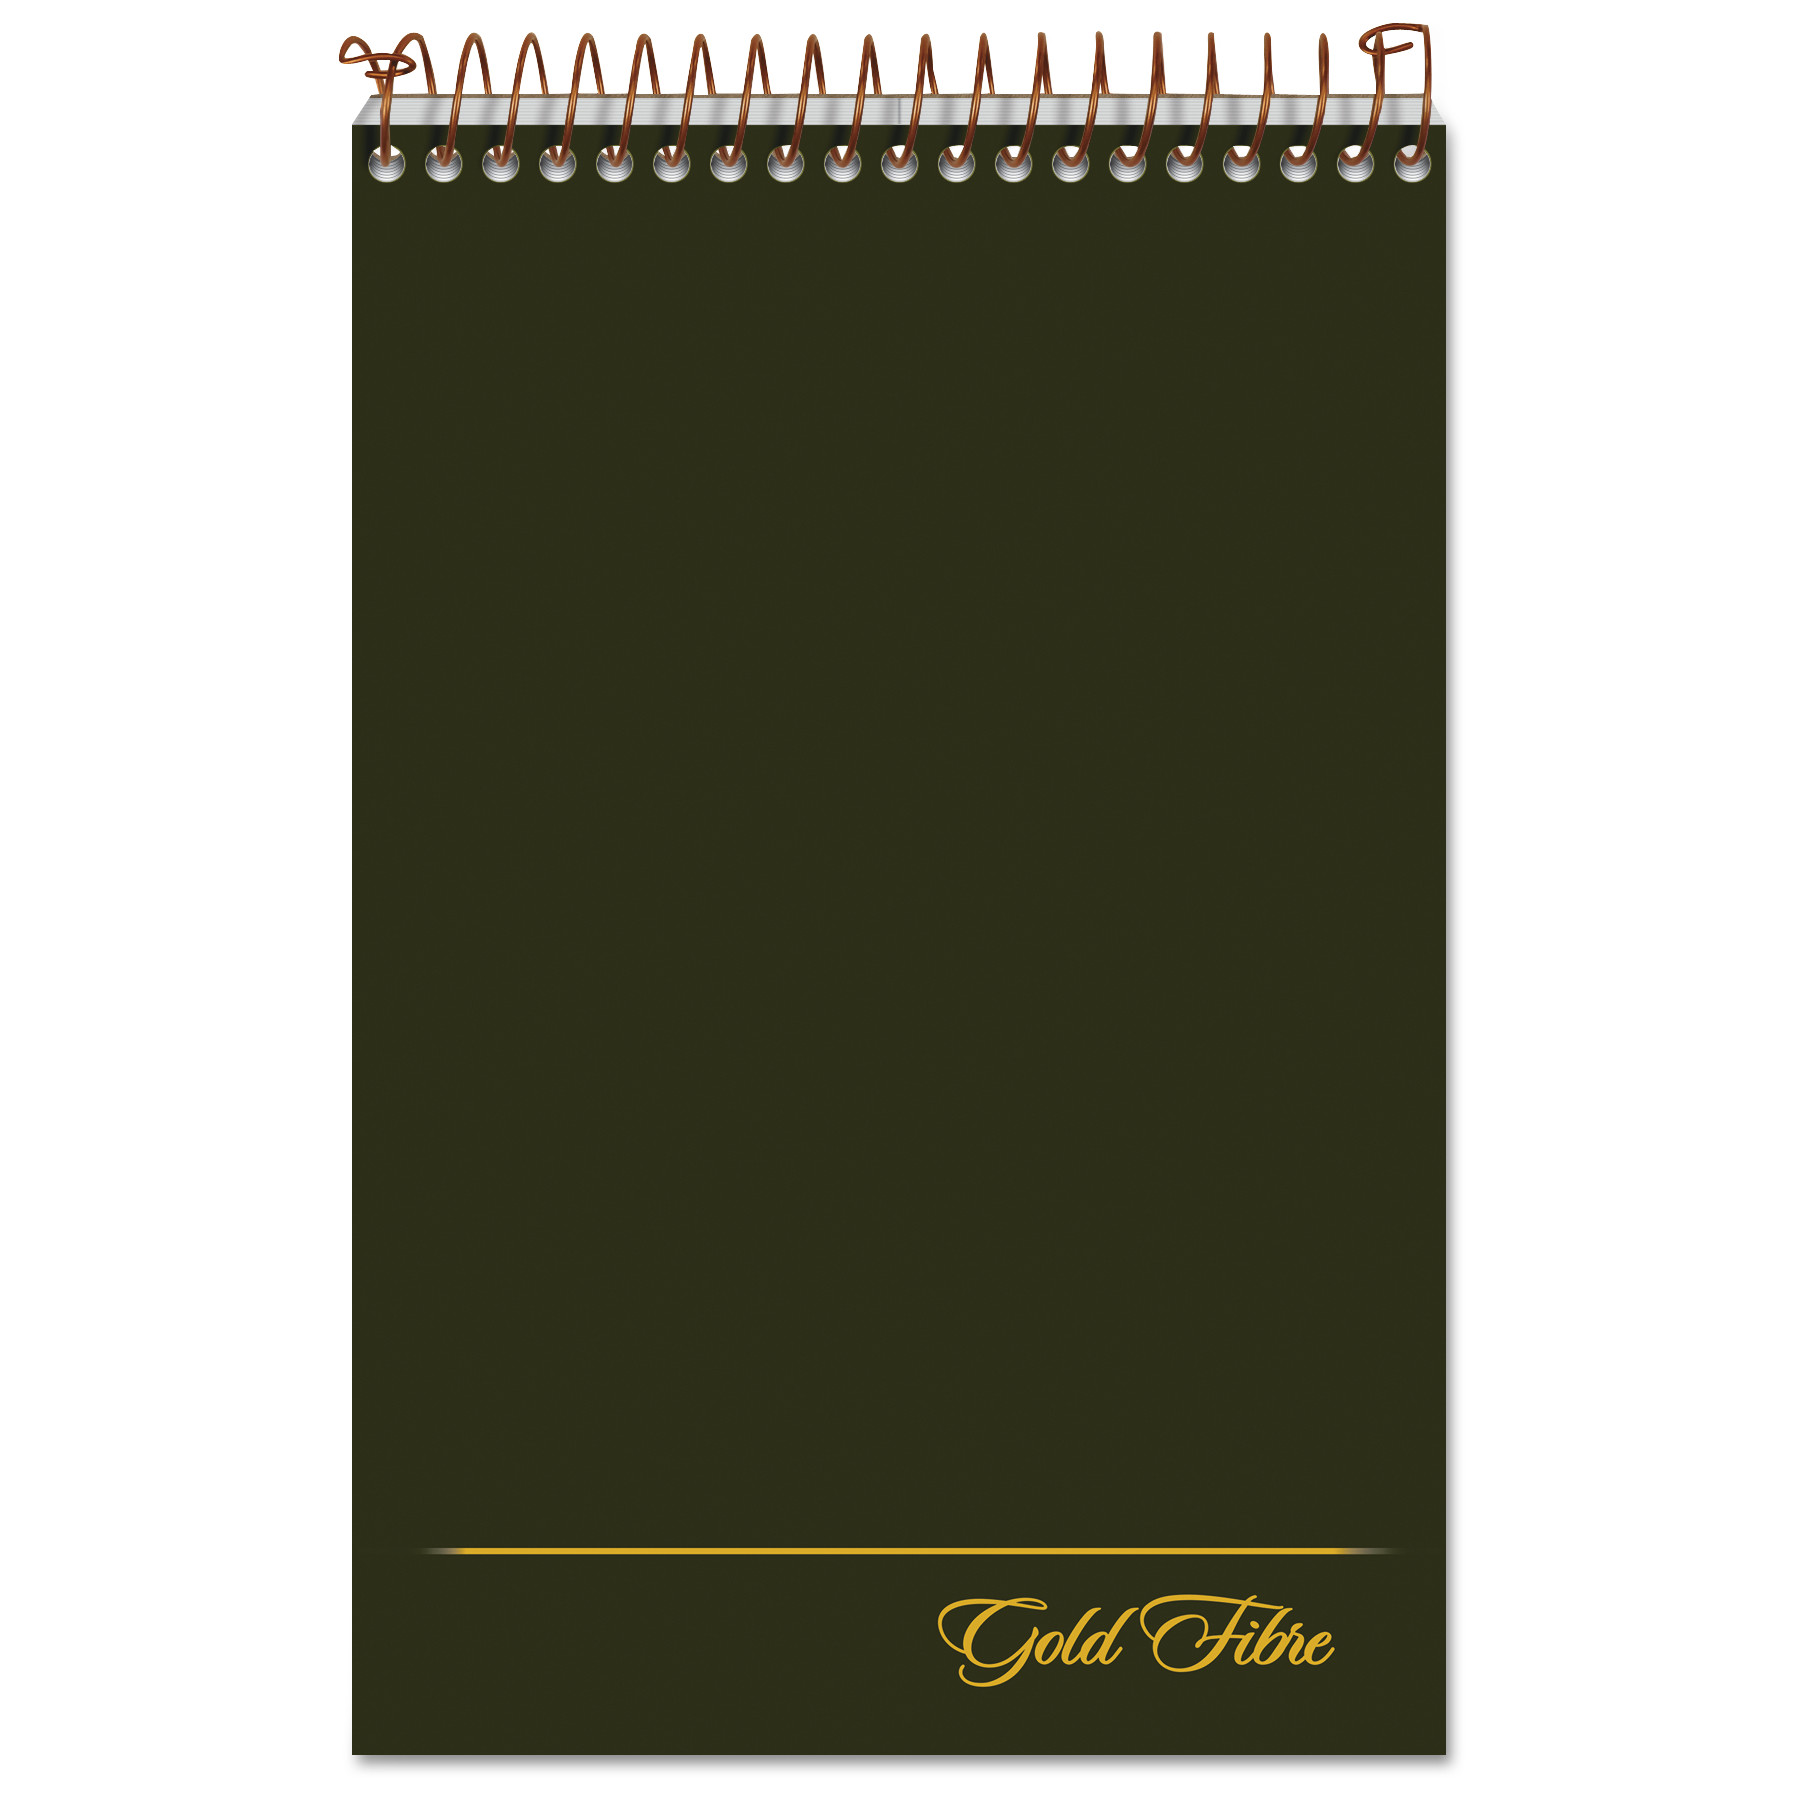  Ampad 20-806R Gold Fibre Steno Books, Gregg Rule, Green Cover, 6 x 9, 100 White Sheets (TOP20806) 